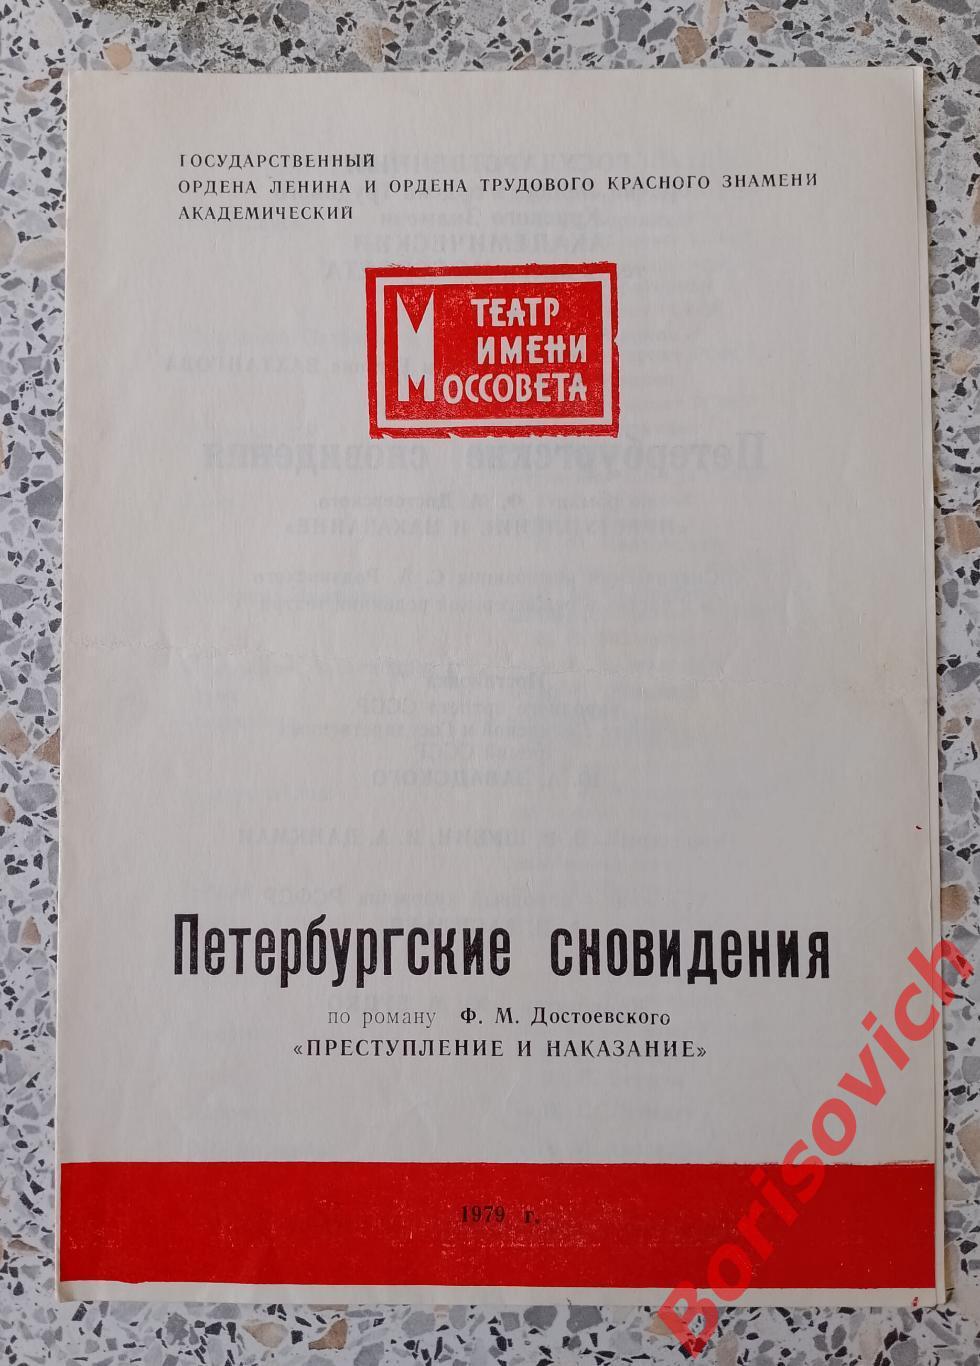 Программка Театр им МОССОВЕТА ПЕТЕРБУРГСКИЕ СНОВИДЕНИЯ 1979